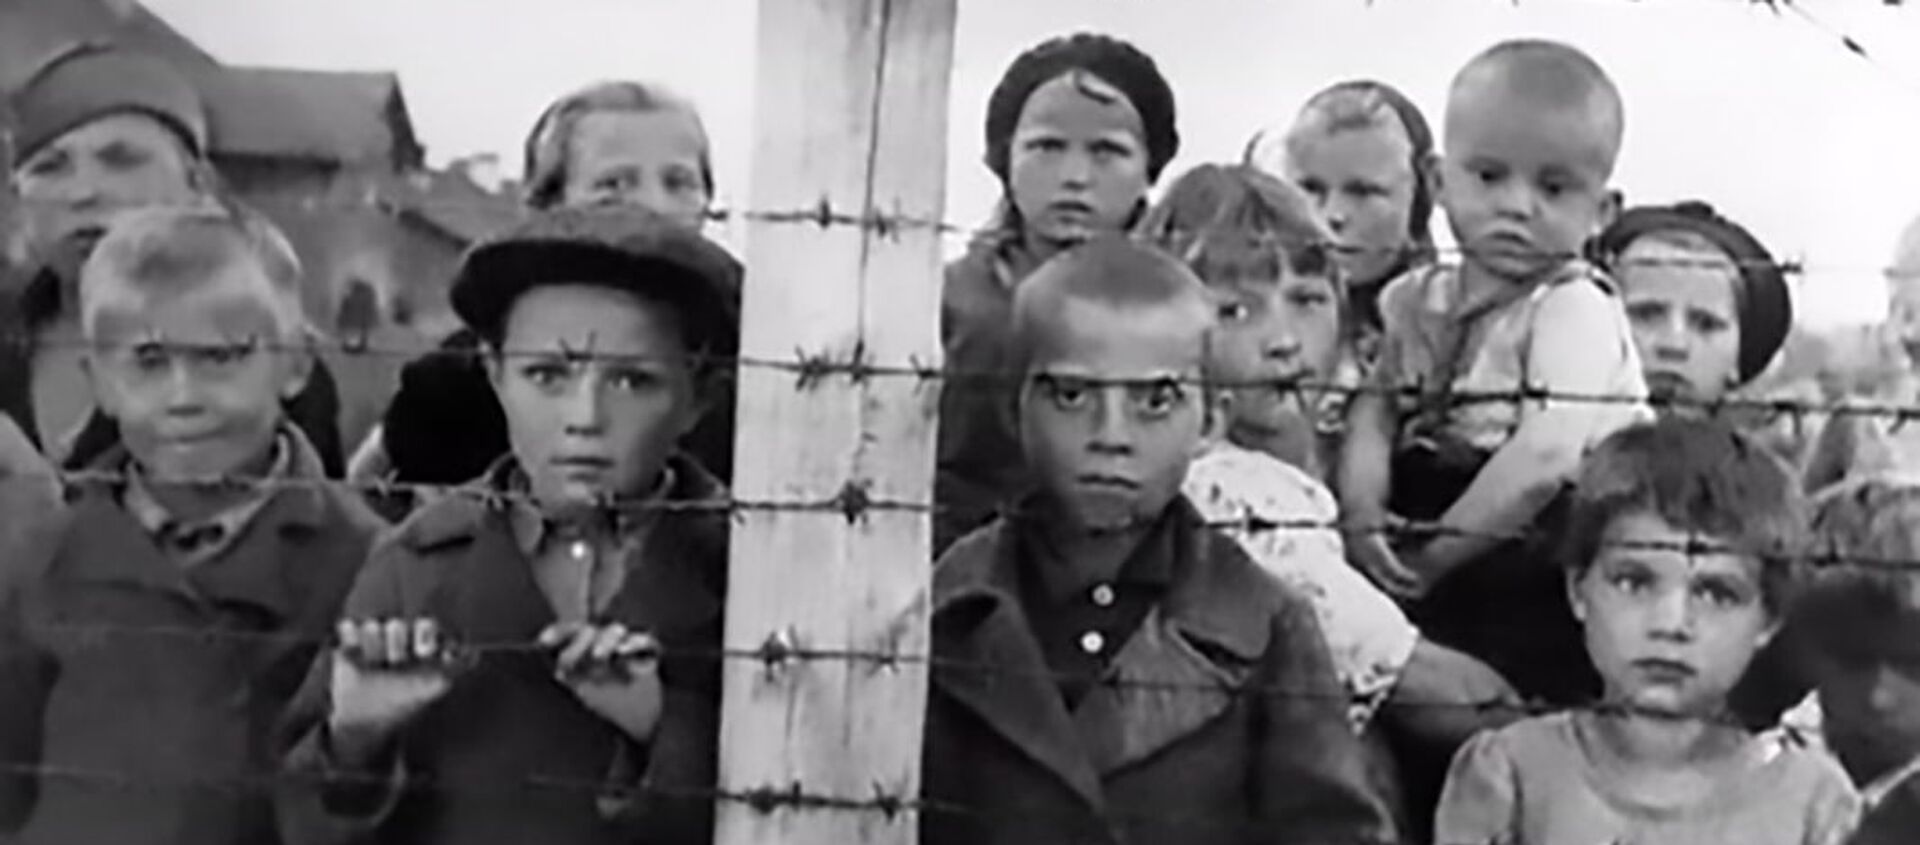 Дети в финском концлагере в Петрозаводске, архивное фото - Sputnik Lietuva, 1920, 05.02.2021